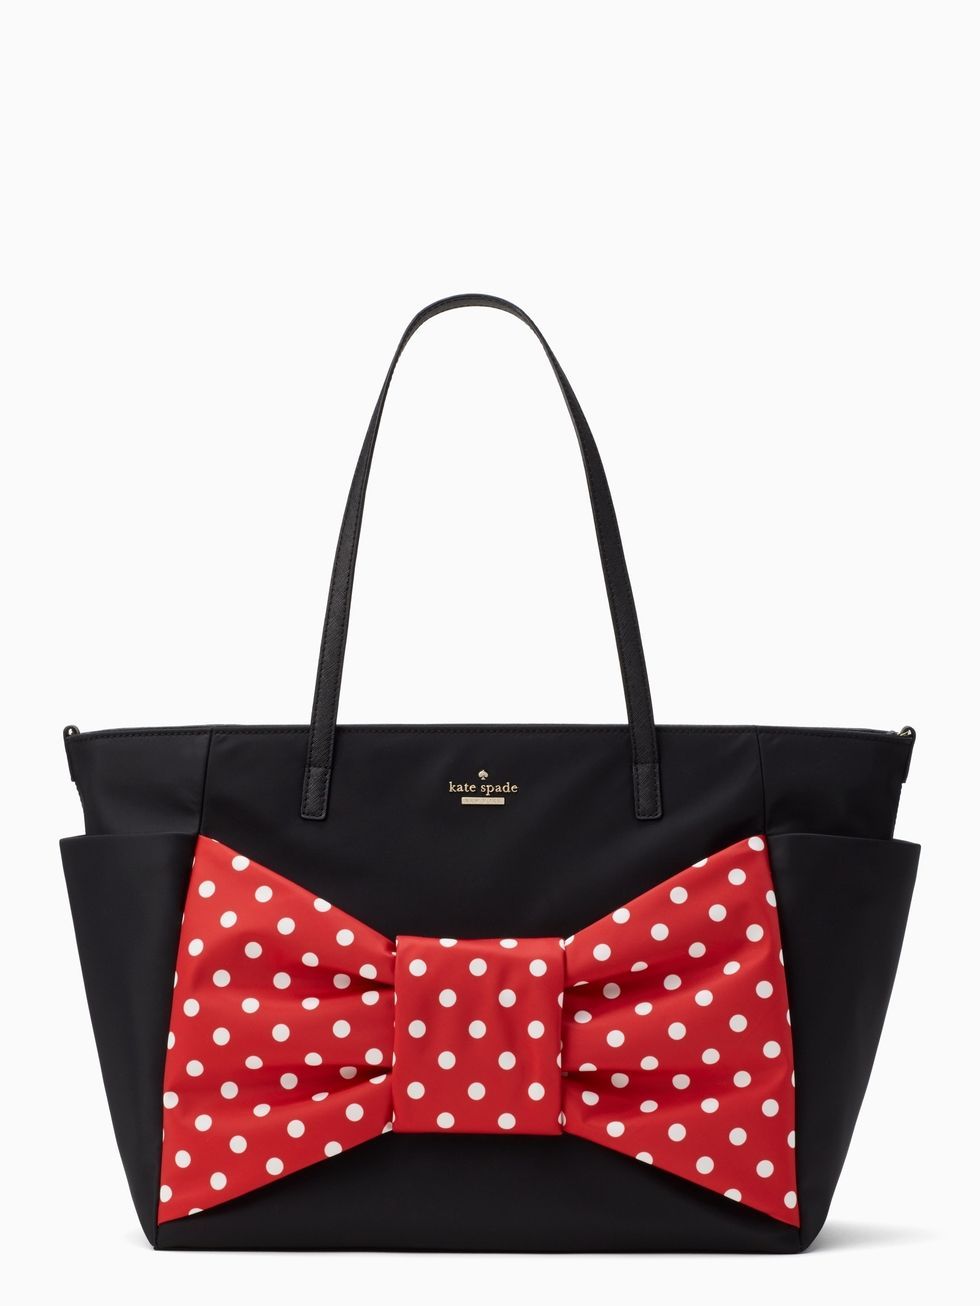 NWT Kate Spade Disney X Minnie Mouse Coin Purse Bag Charm White Polka Dot  Ears | eBay